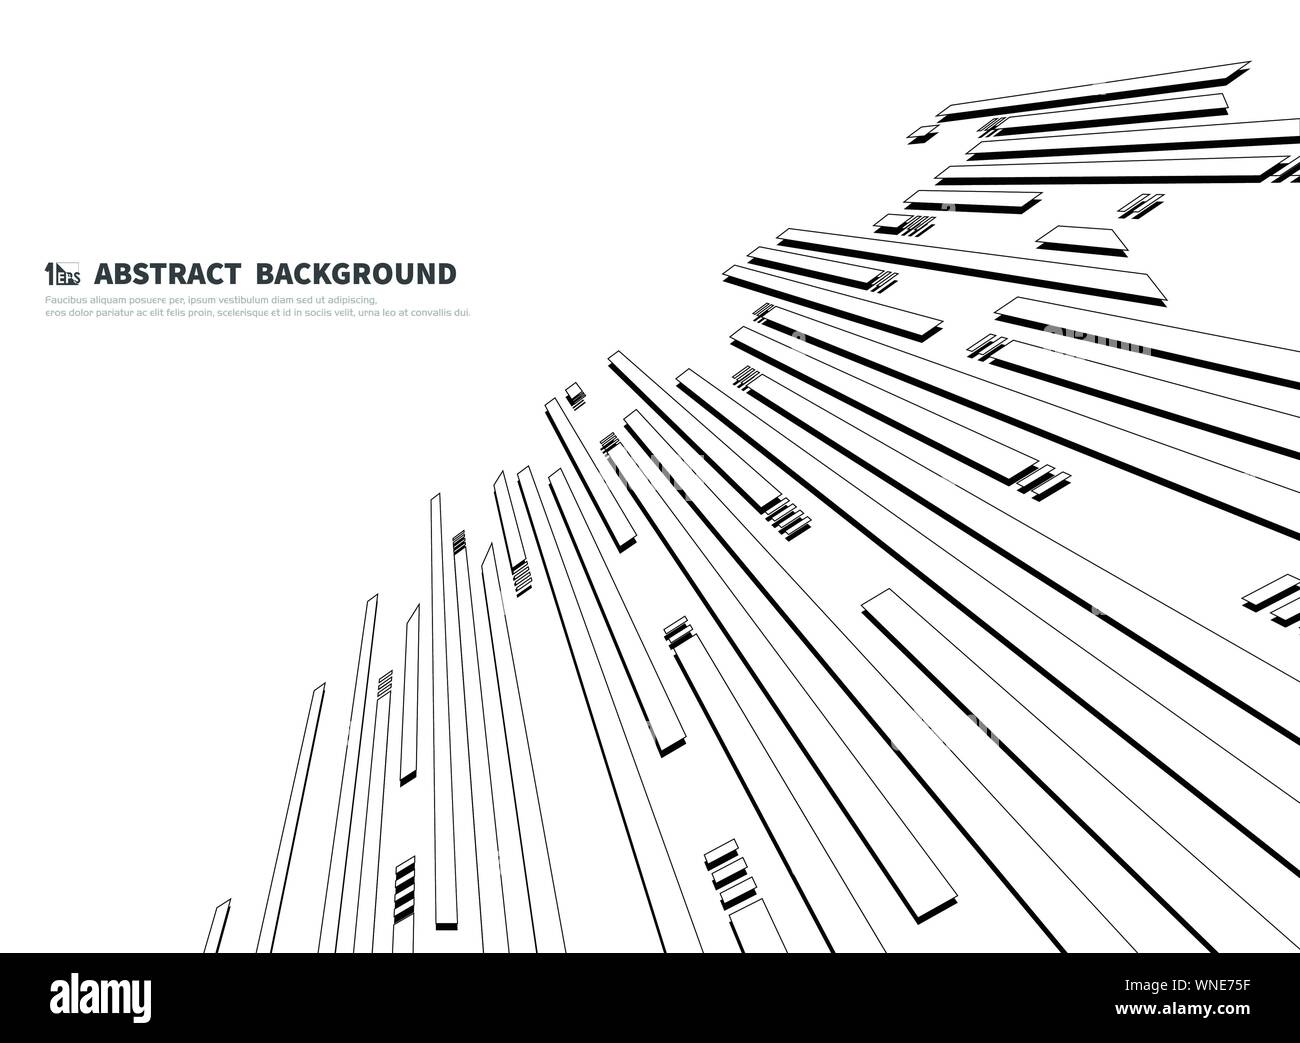 Abstrakte schwarz-weiß Design der Technologie Hintergrund. Sie für Ad, Poster, Artwork, Vorlage verwenden können, Geschäftsbericht, drucken. illustration Vektor Stock Vektor